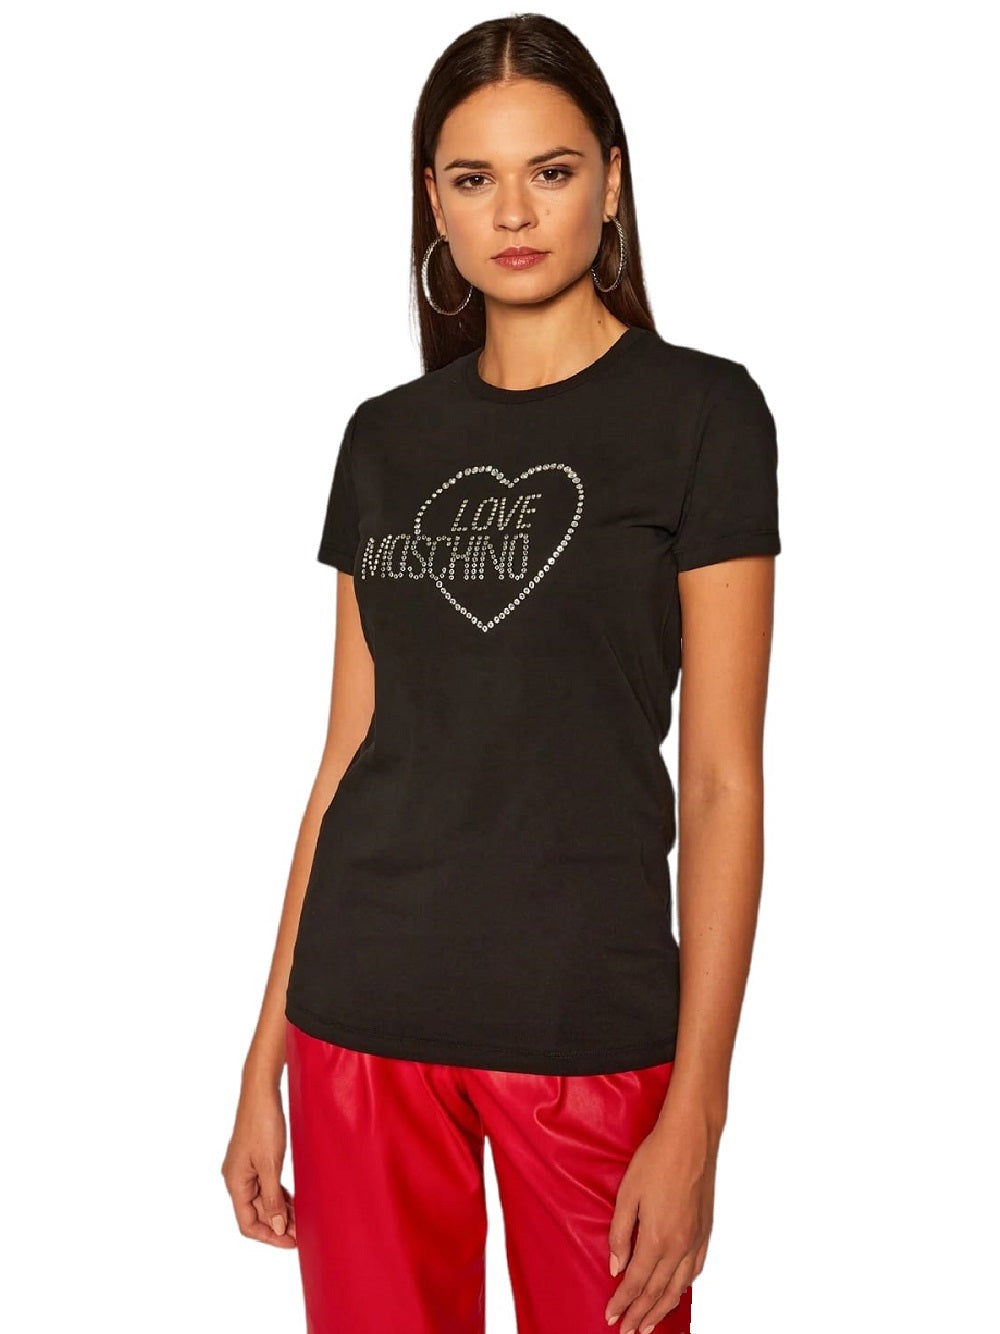 T-Shirt Love Moschino W4F731HE1951 realizzata interamente in cotone. Frontalmente la T-Shirt presenta dei brillantini applicati a formare il lettering del brand e cuore incorniciato.